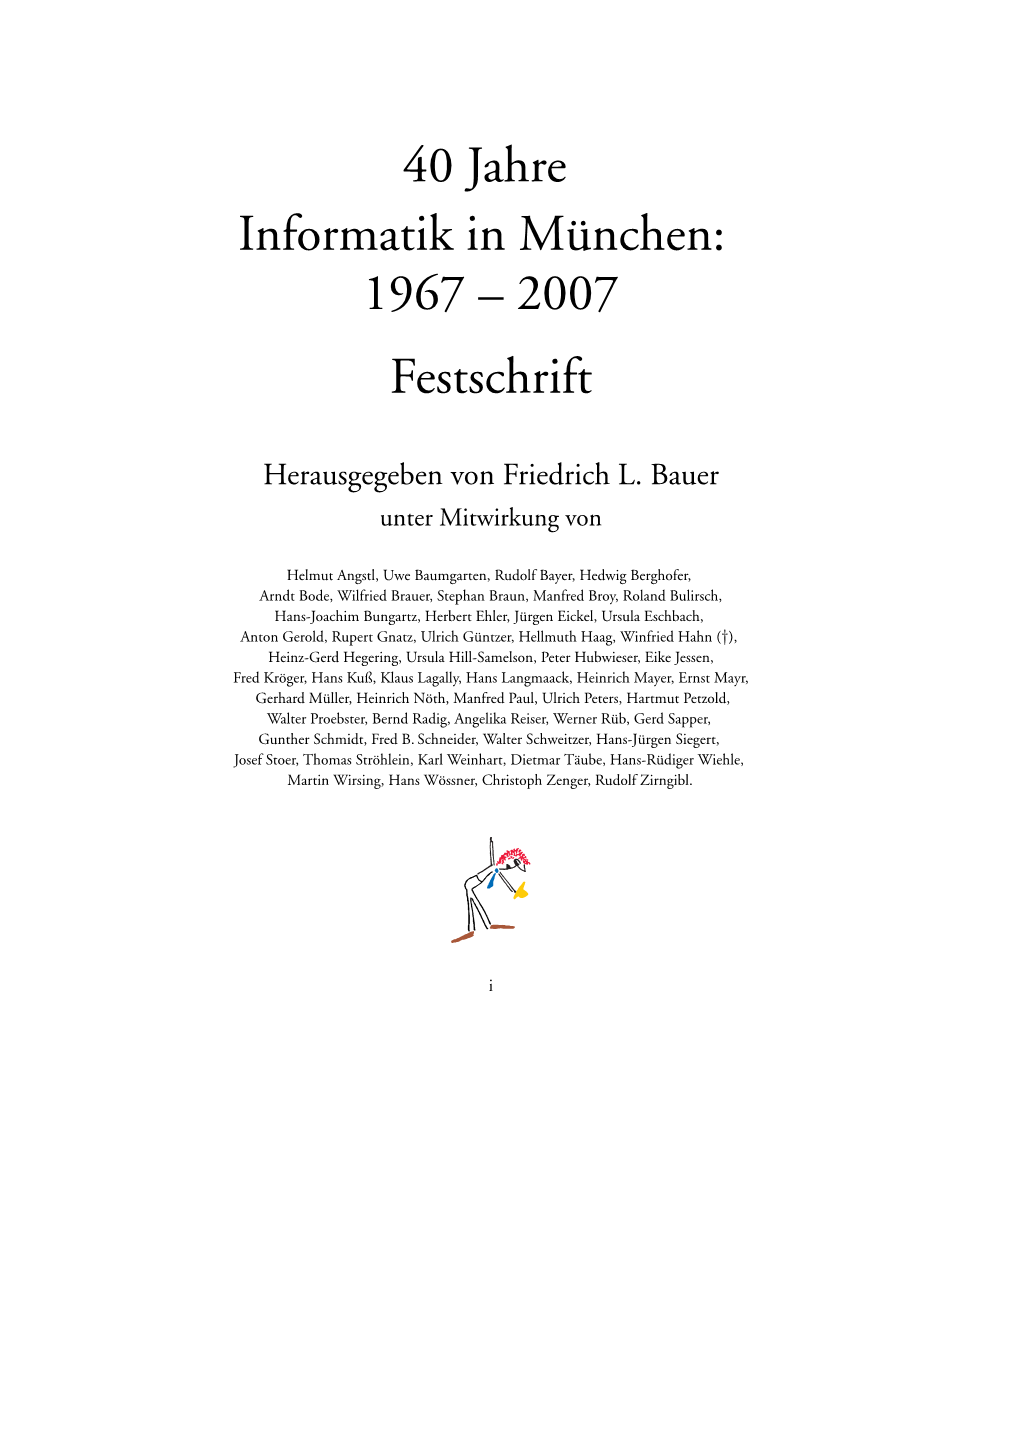 40 Jahre Informatik in München 1967-2007